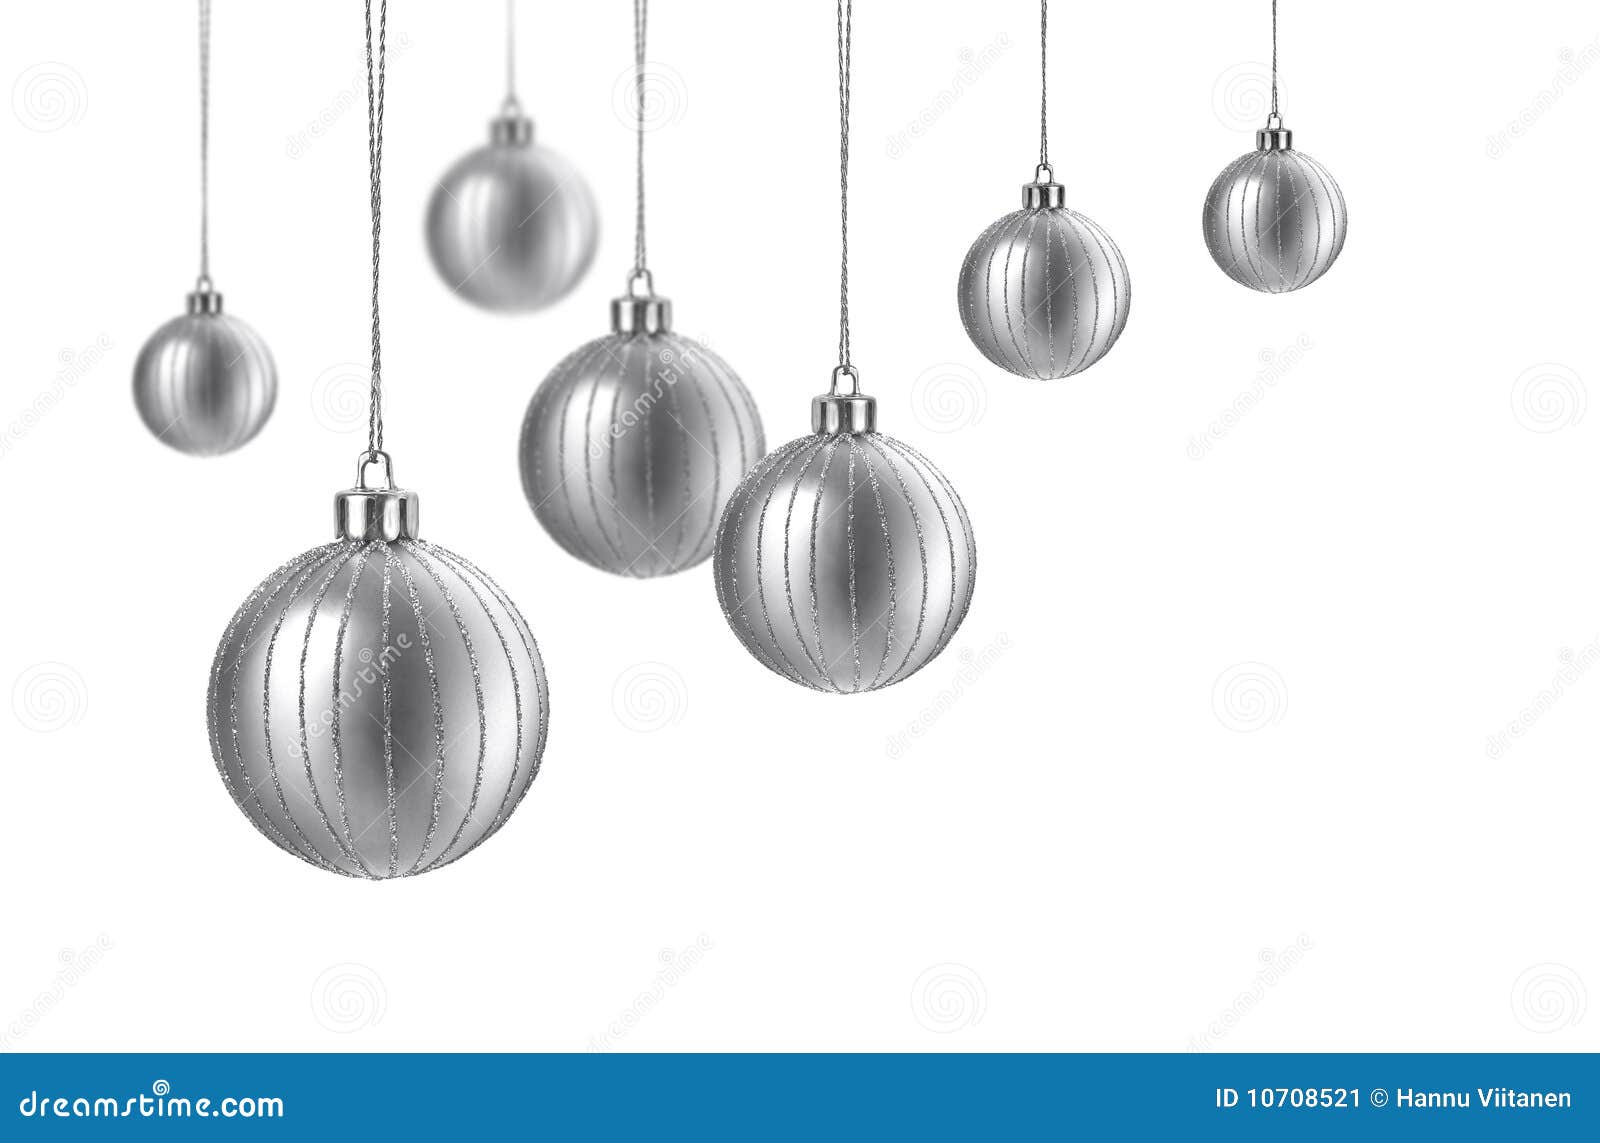 Satin Silver Christmas Balls Stock Image - Image: 10708521